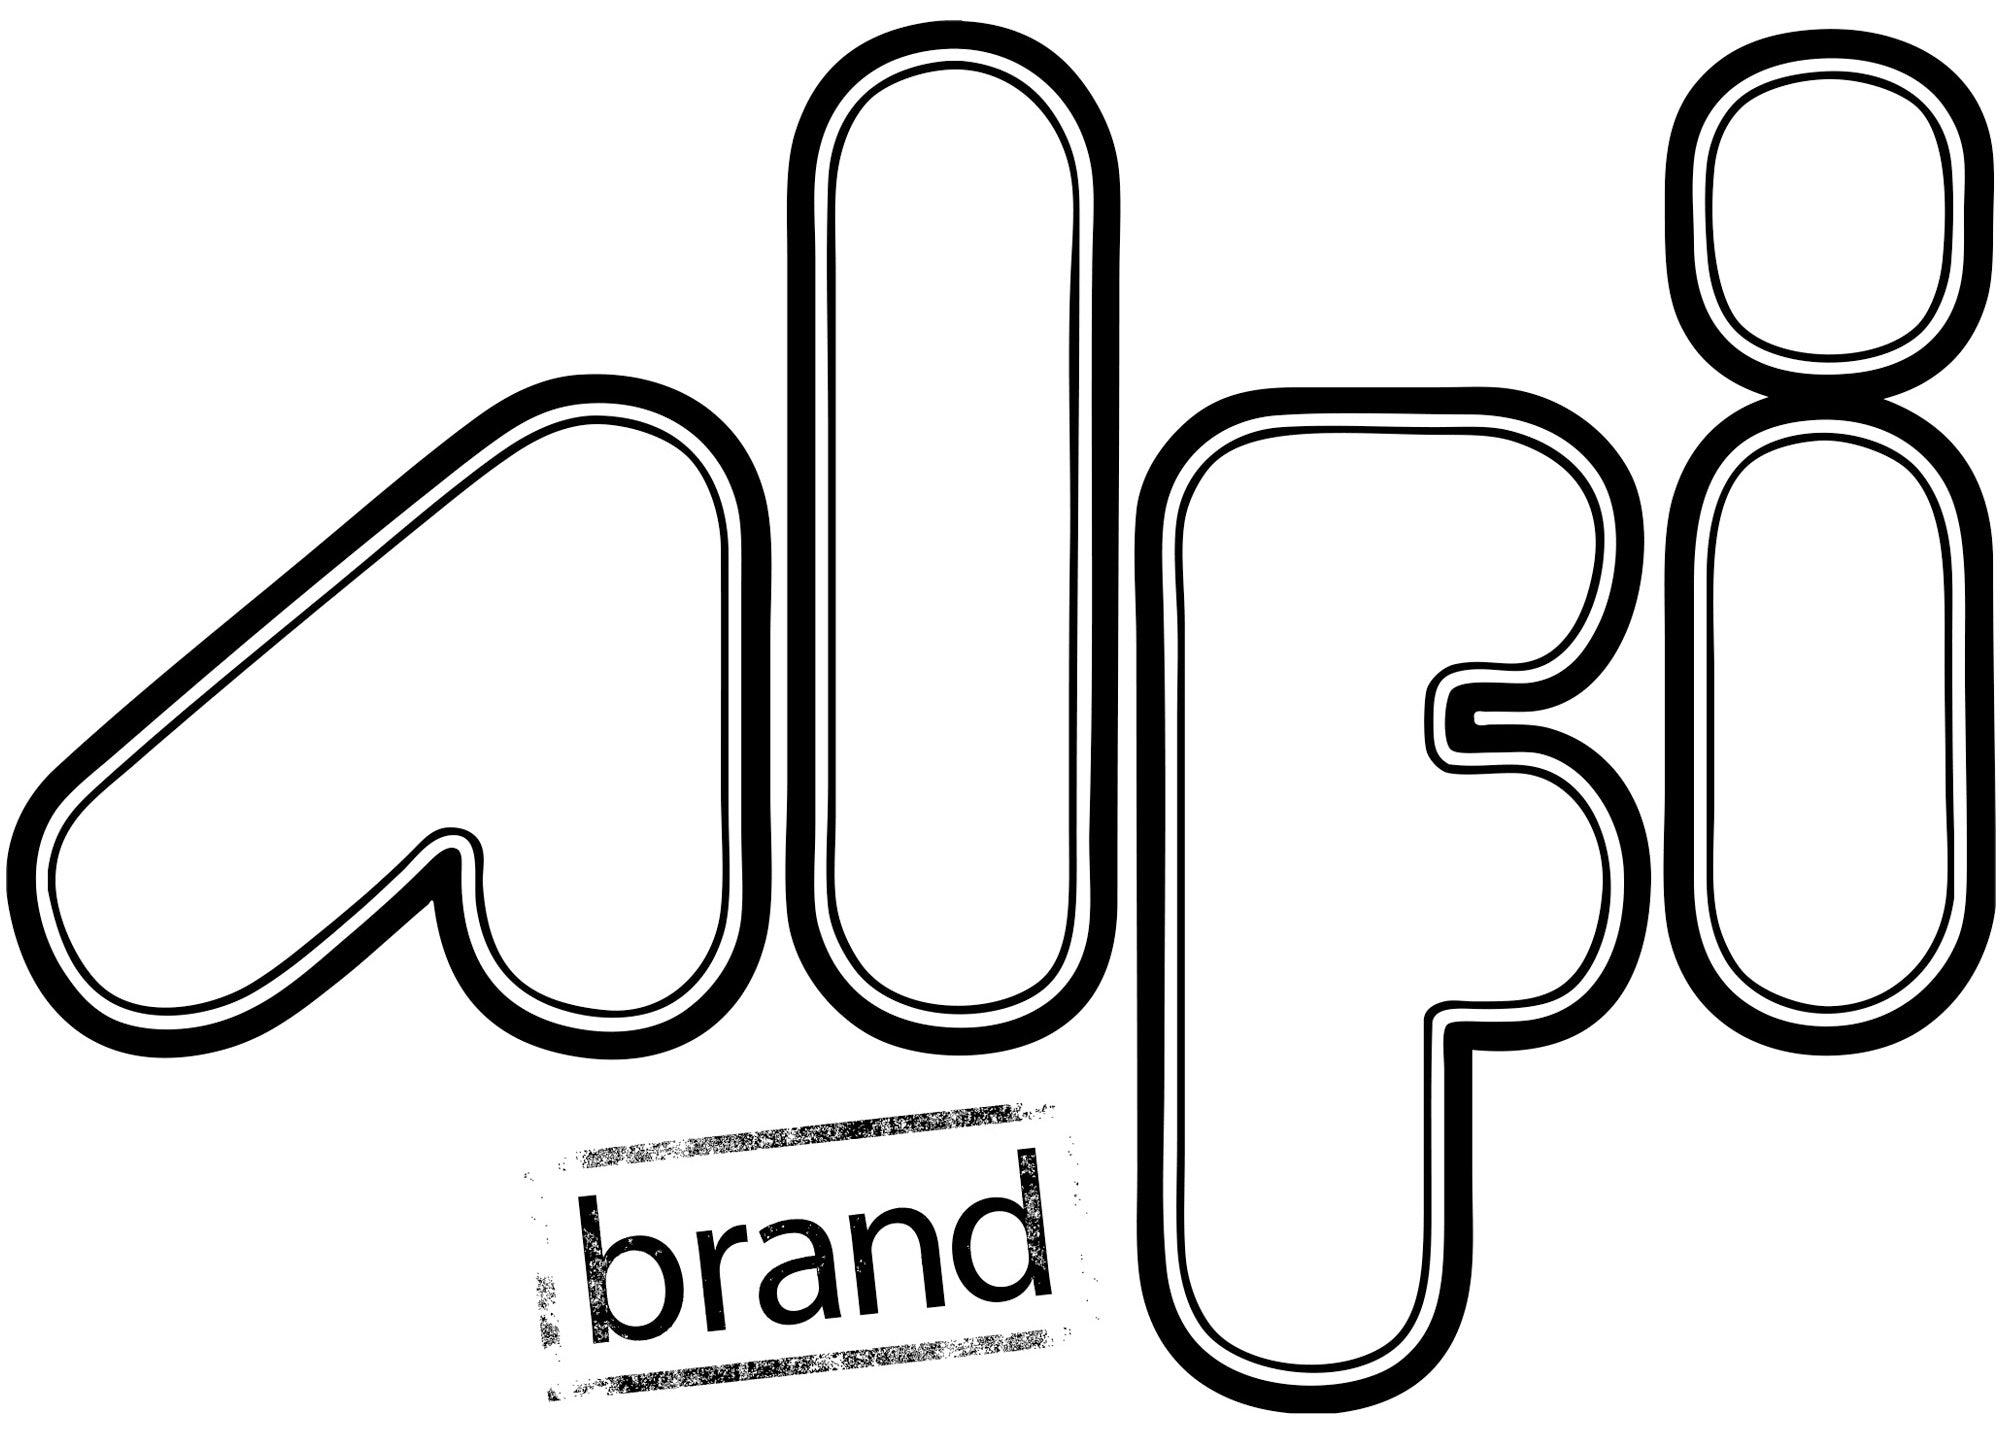 ALFI Brand - Stainless Steel Colander Insert for Granite Sinks | AB85SSC